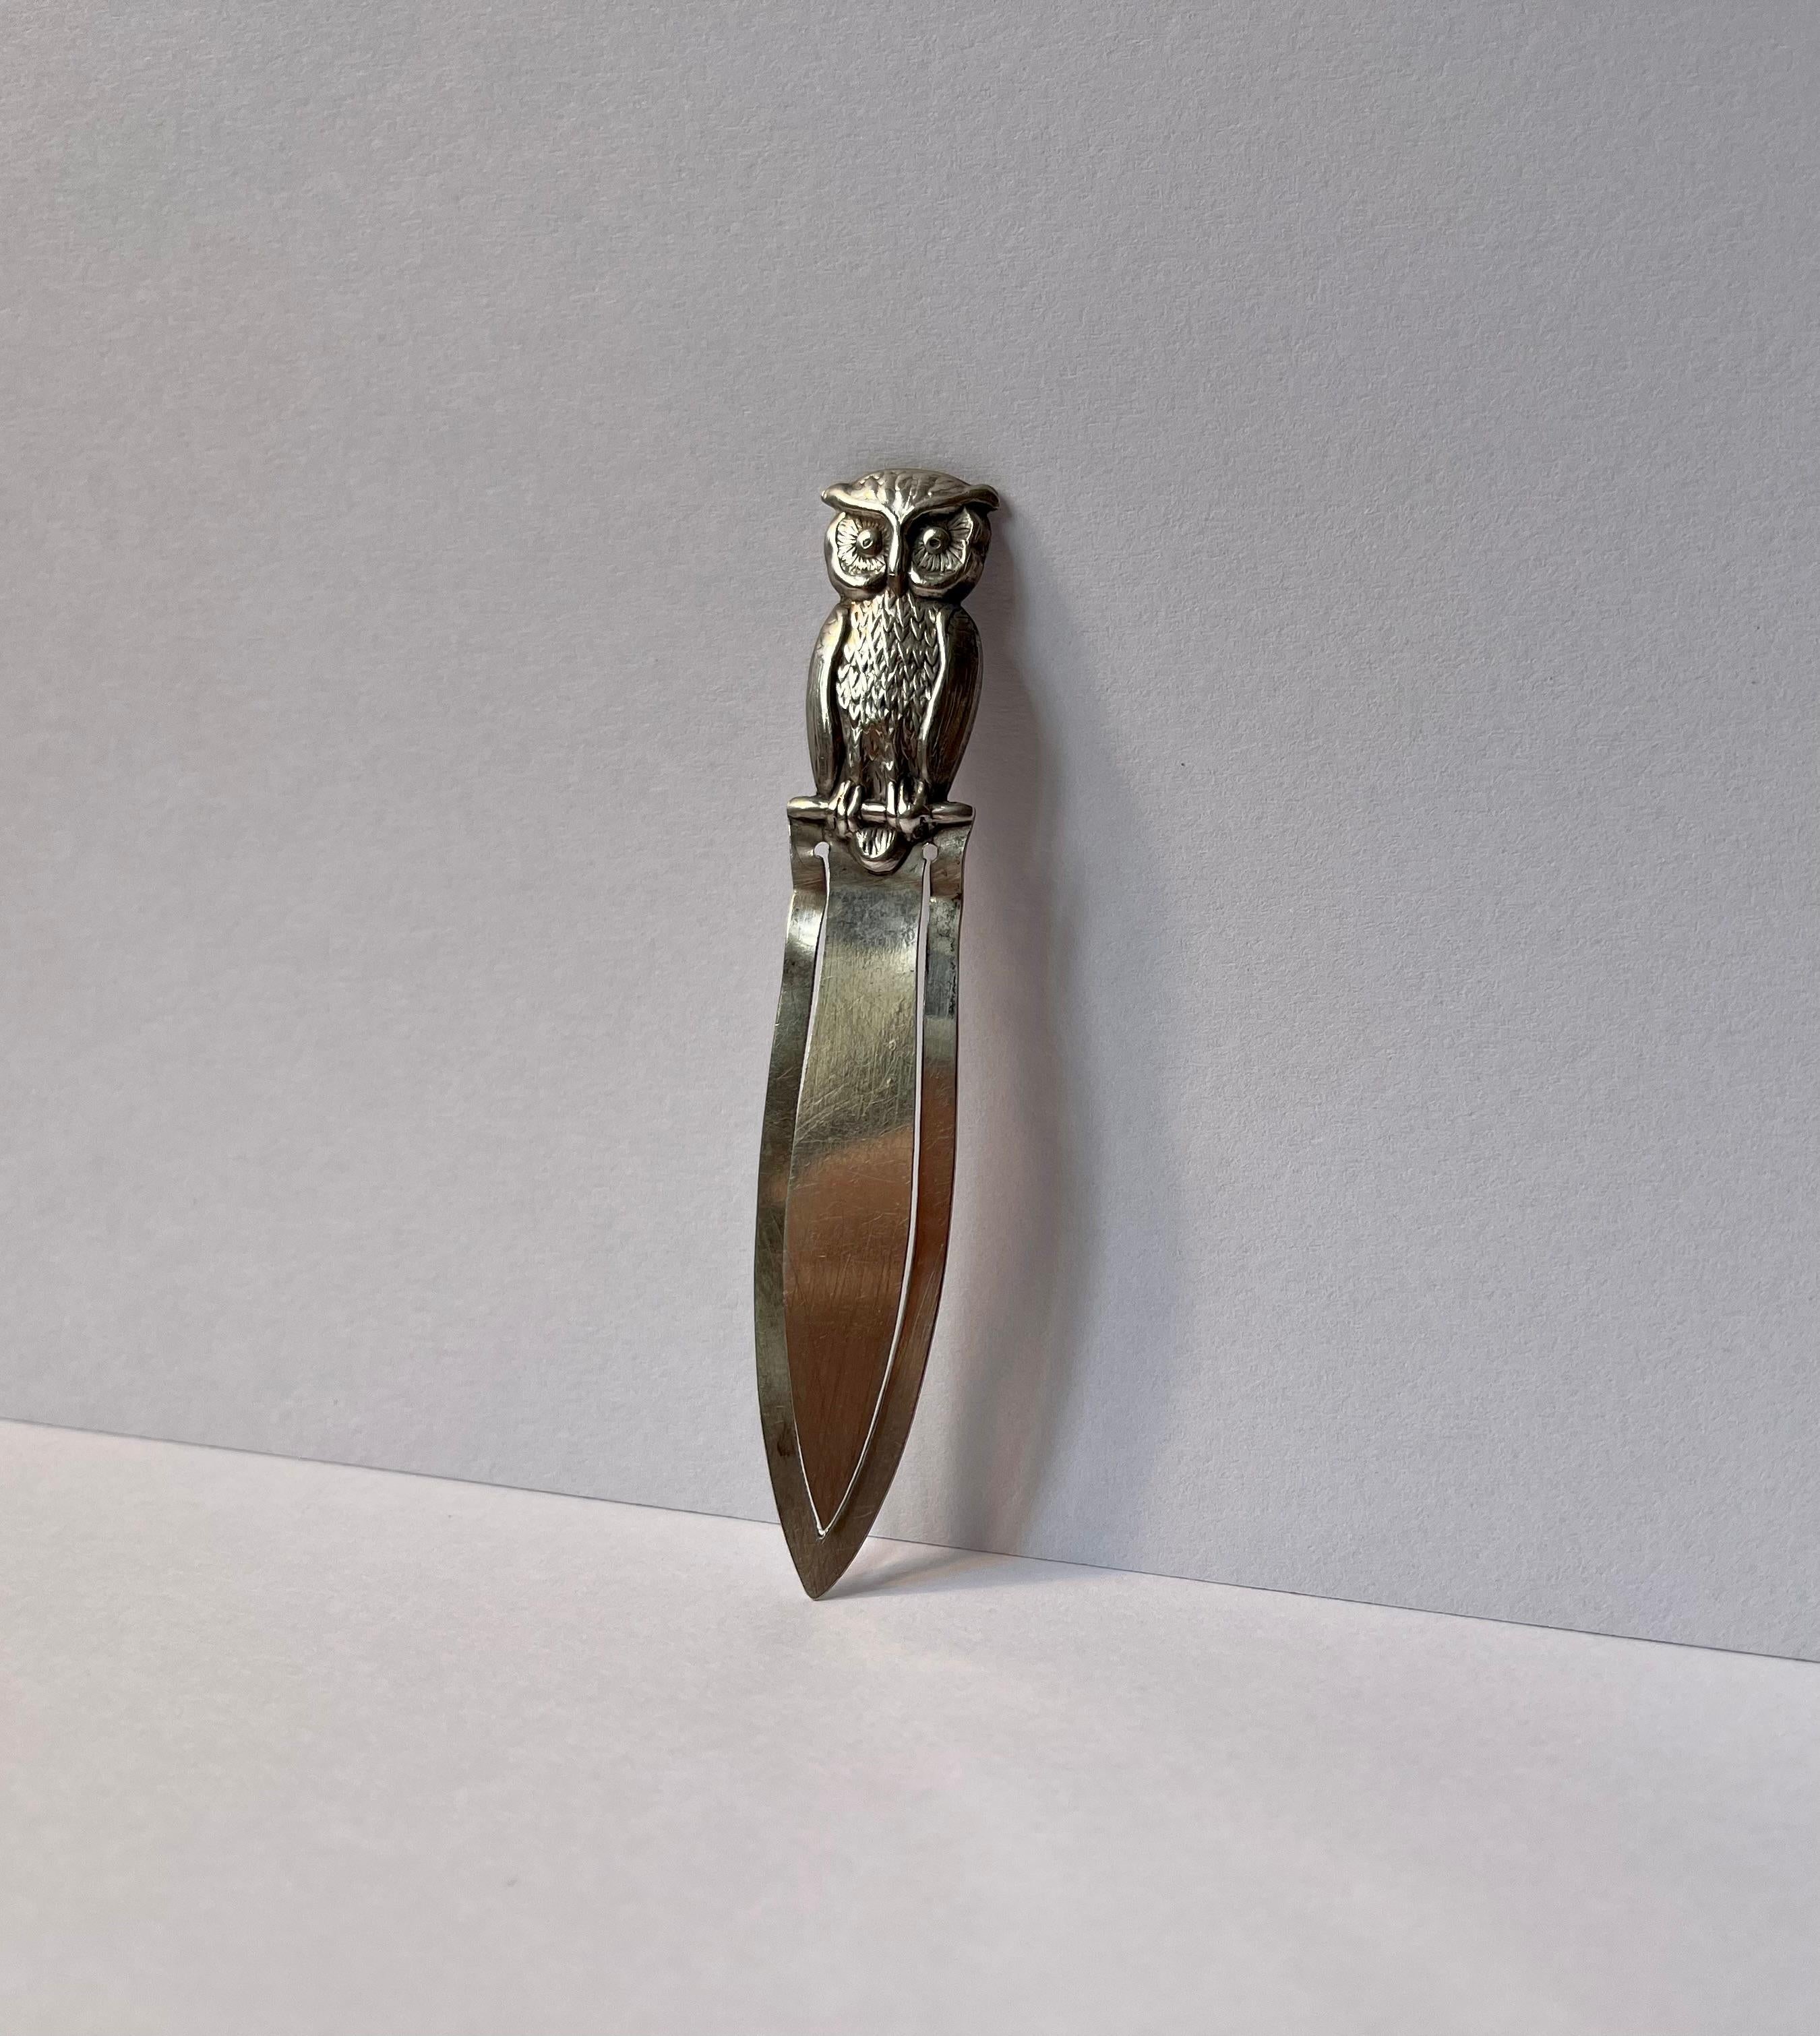 Hugo Grün, ein renommierter Kopenhagener Silberschmied, fertigte dieses kleine praktische Luxus-Lesezeichen aus 830/1000 Silber. Feine geprägte Details und praktische Seitenhülle. Die Eule symbolisiert multikulturell innere Weisheit, Veränderung,